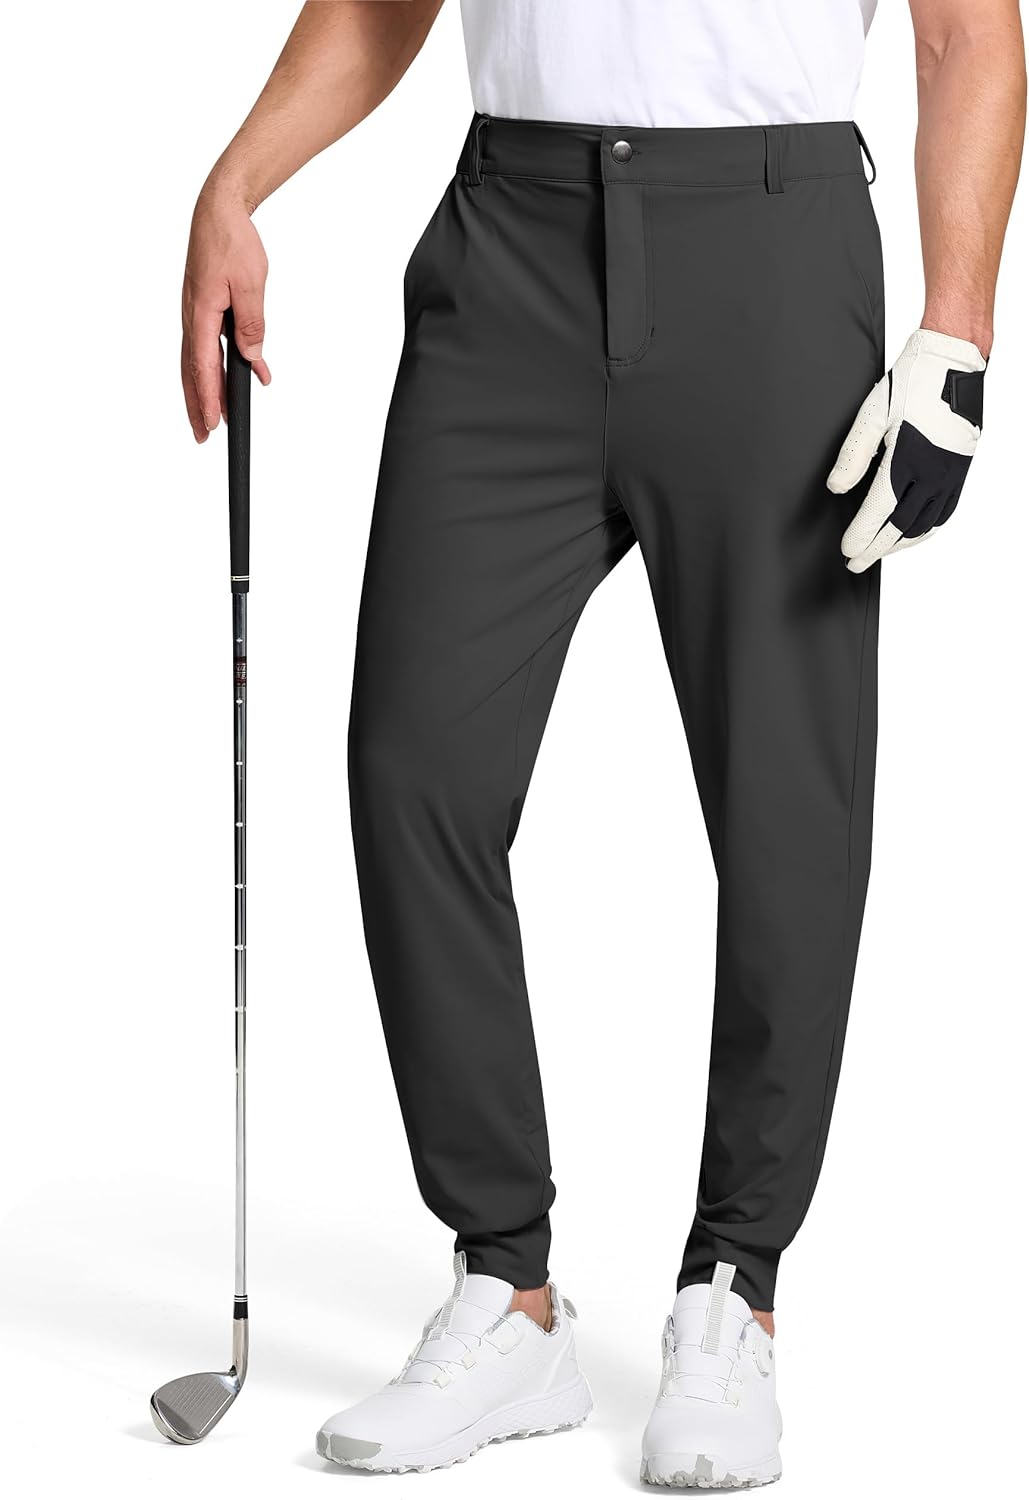 Rhone Commuter Jogger | Golf Equipment: Clubs, Balls, Bags | GolfDigest.com